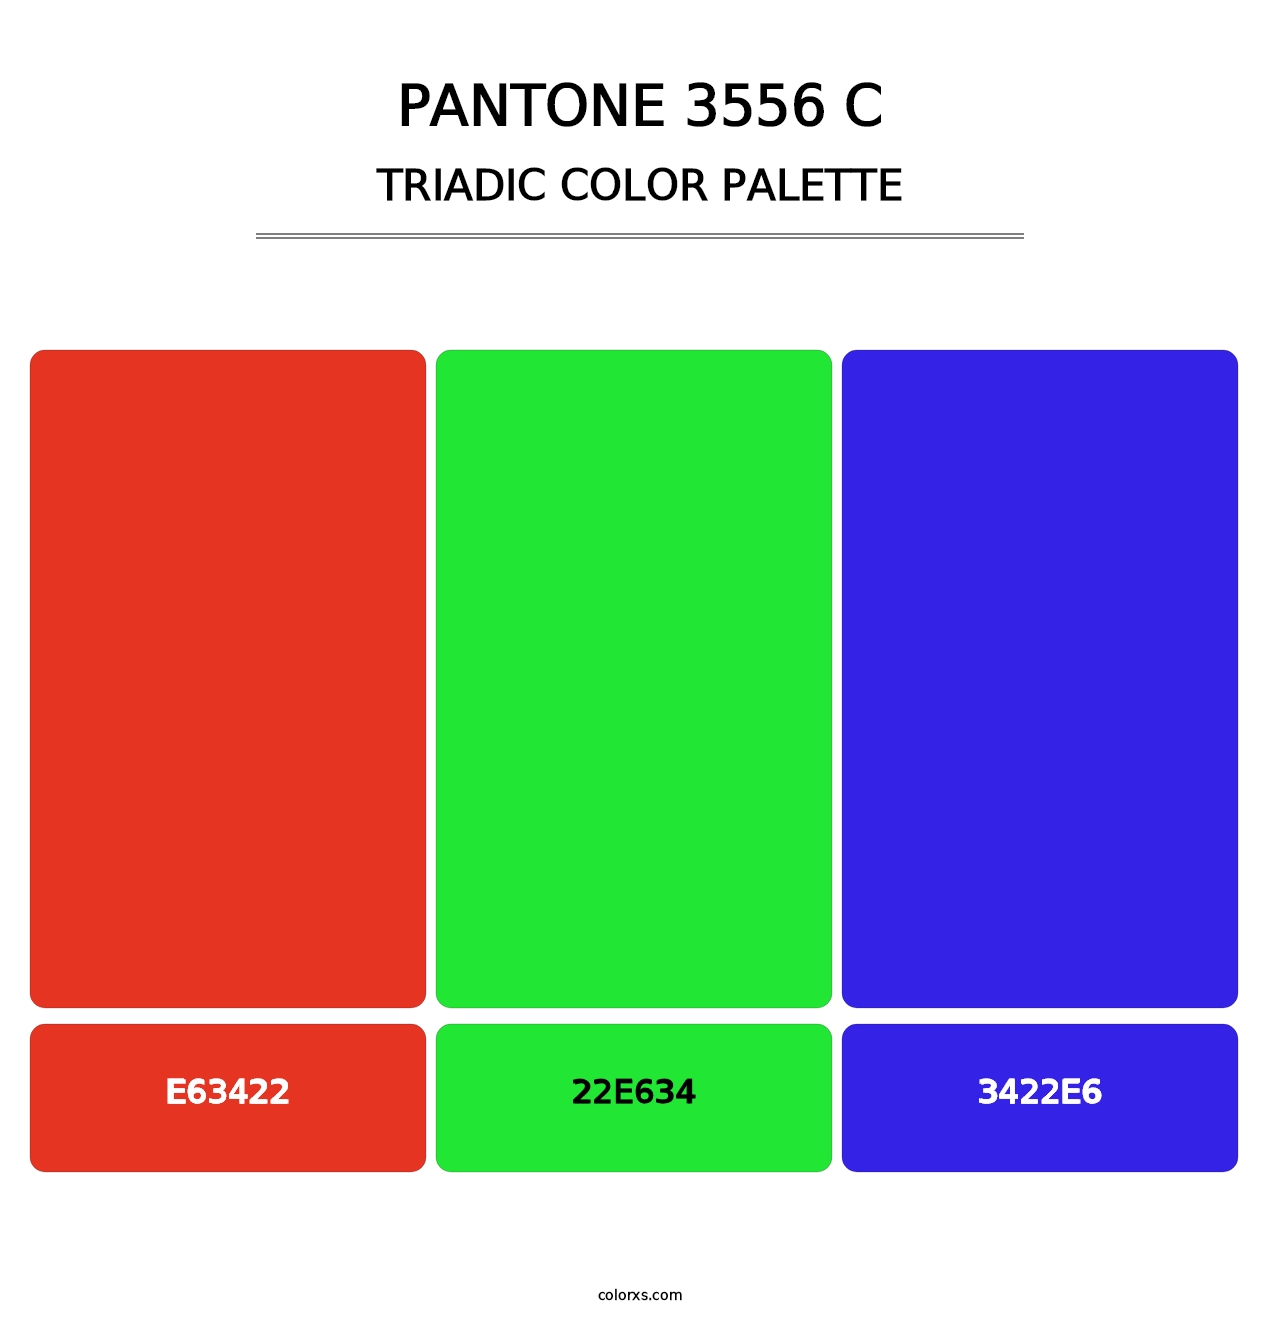 PANTONE 3556 C - Triadic Color Palette